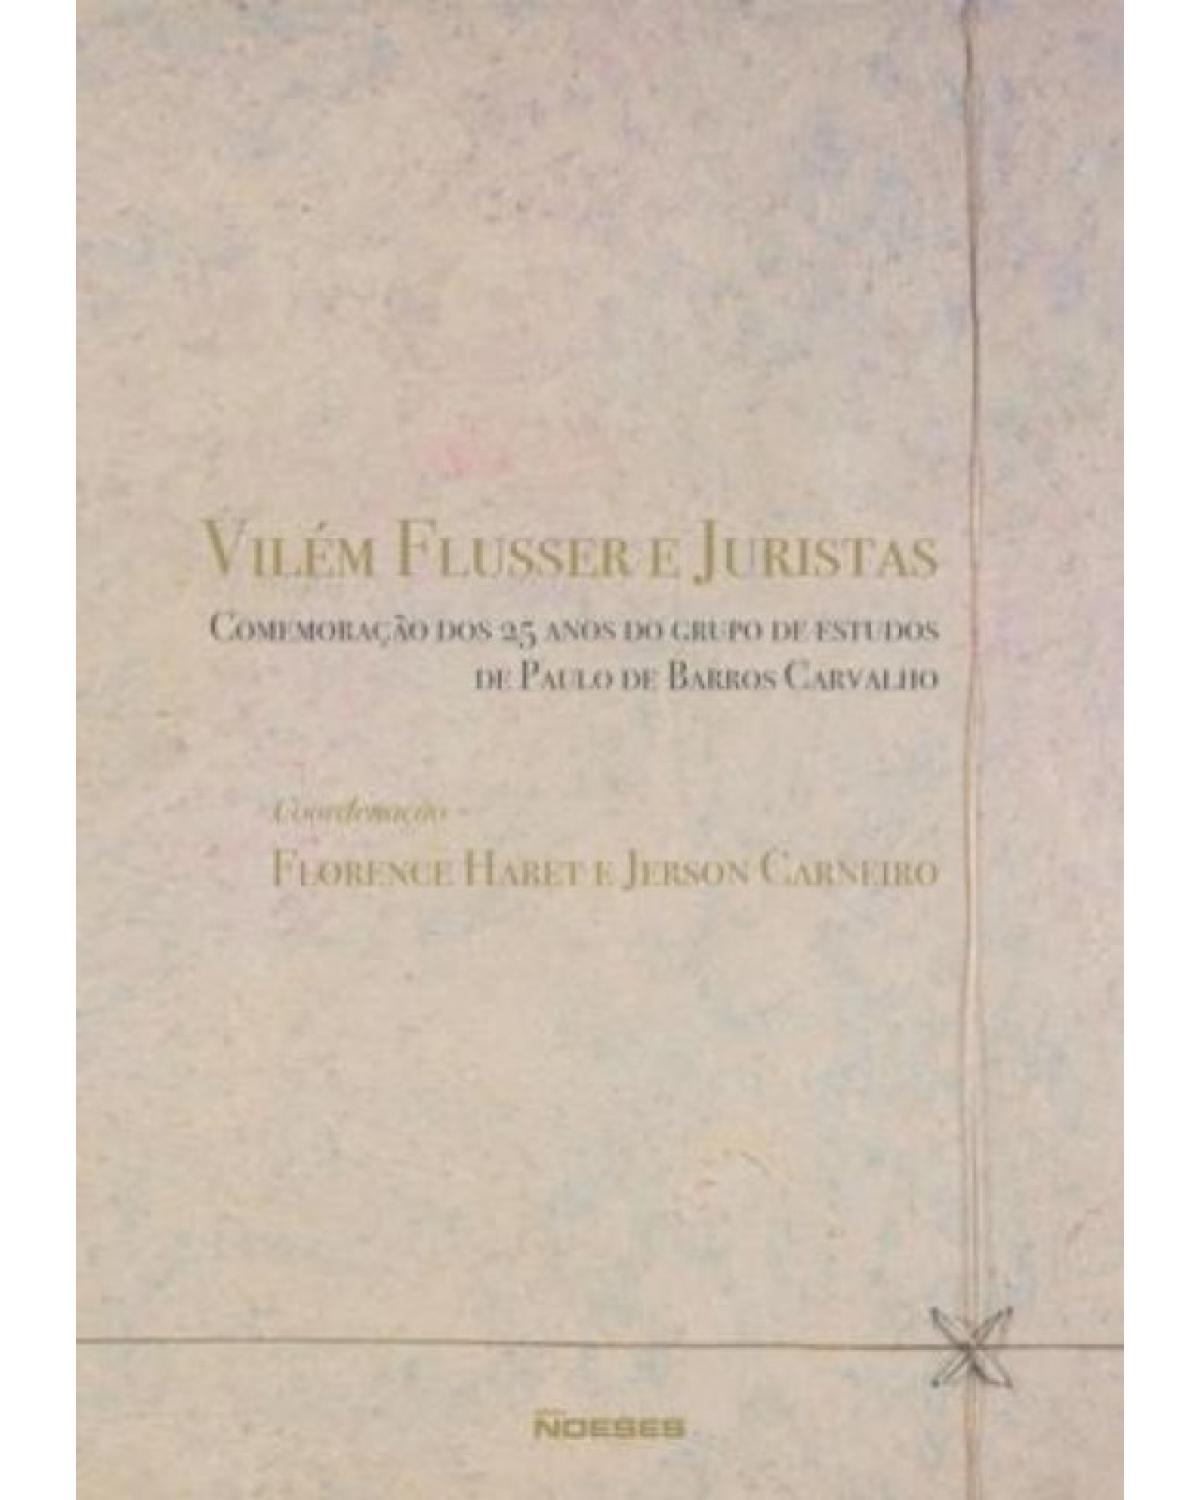 Vilém Flusser e juristas - comemoração dos 25 anos do grupo de estudos de Paulo de Barros Carvalho - 1ª Edição | 2009